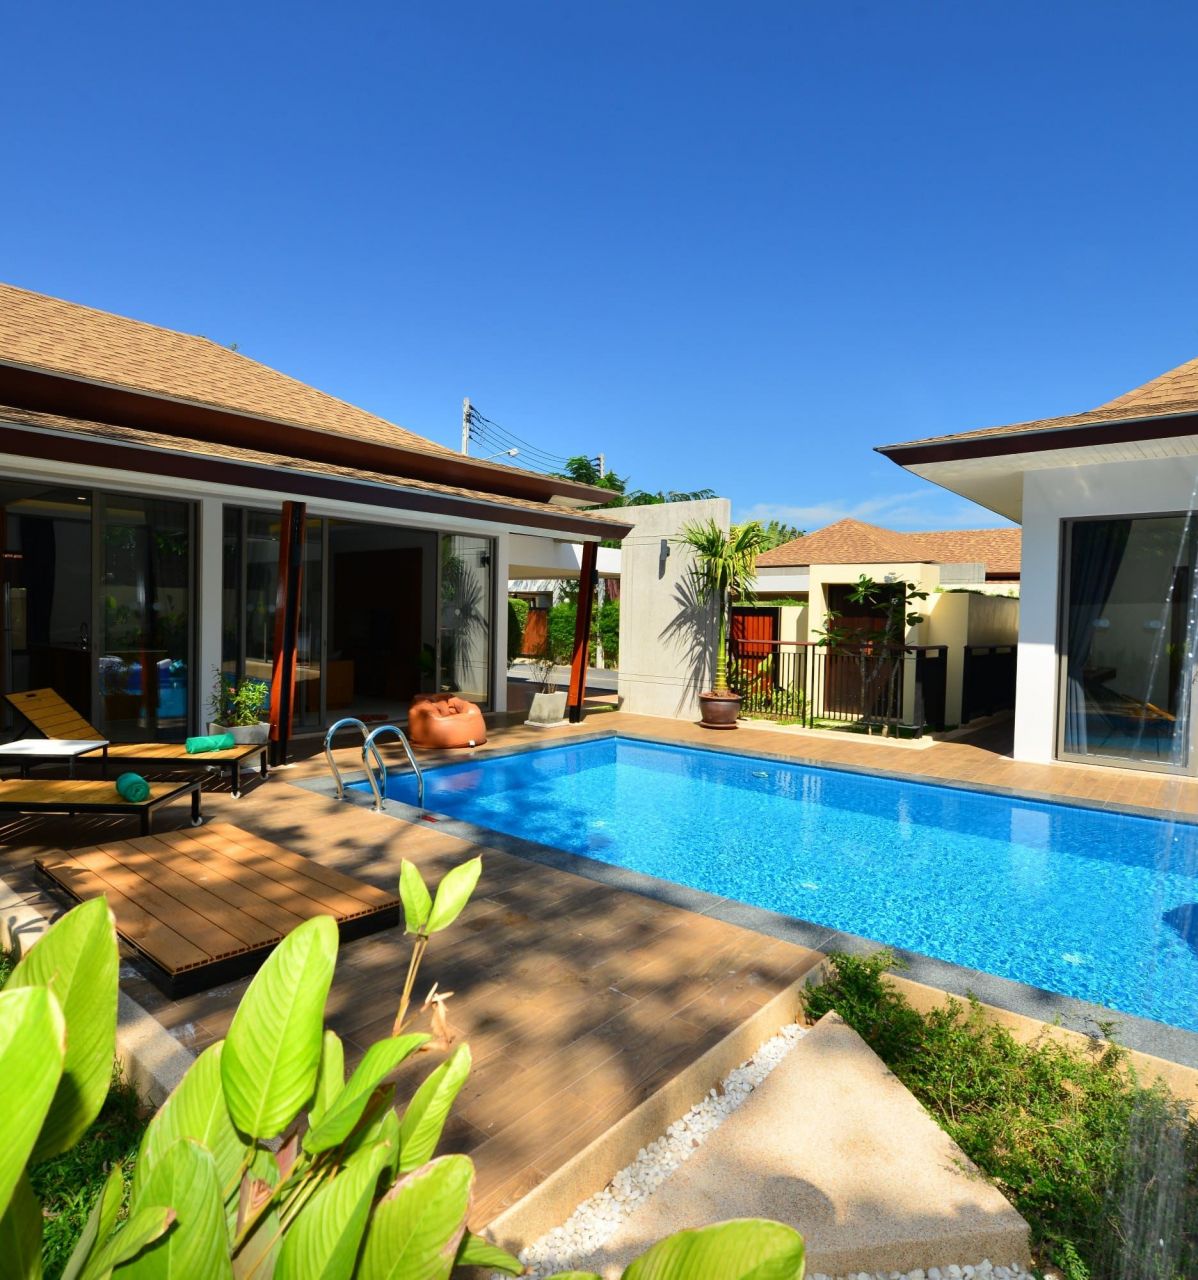 Villa in Insel Phuket, Thailand, 237 m2 - Foto 1